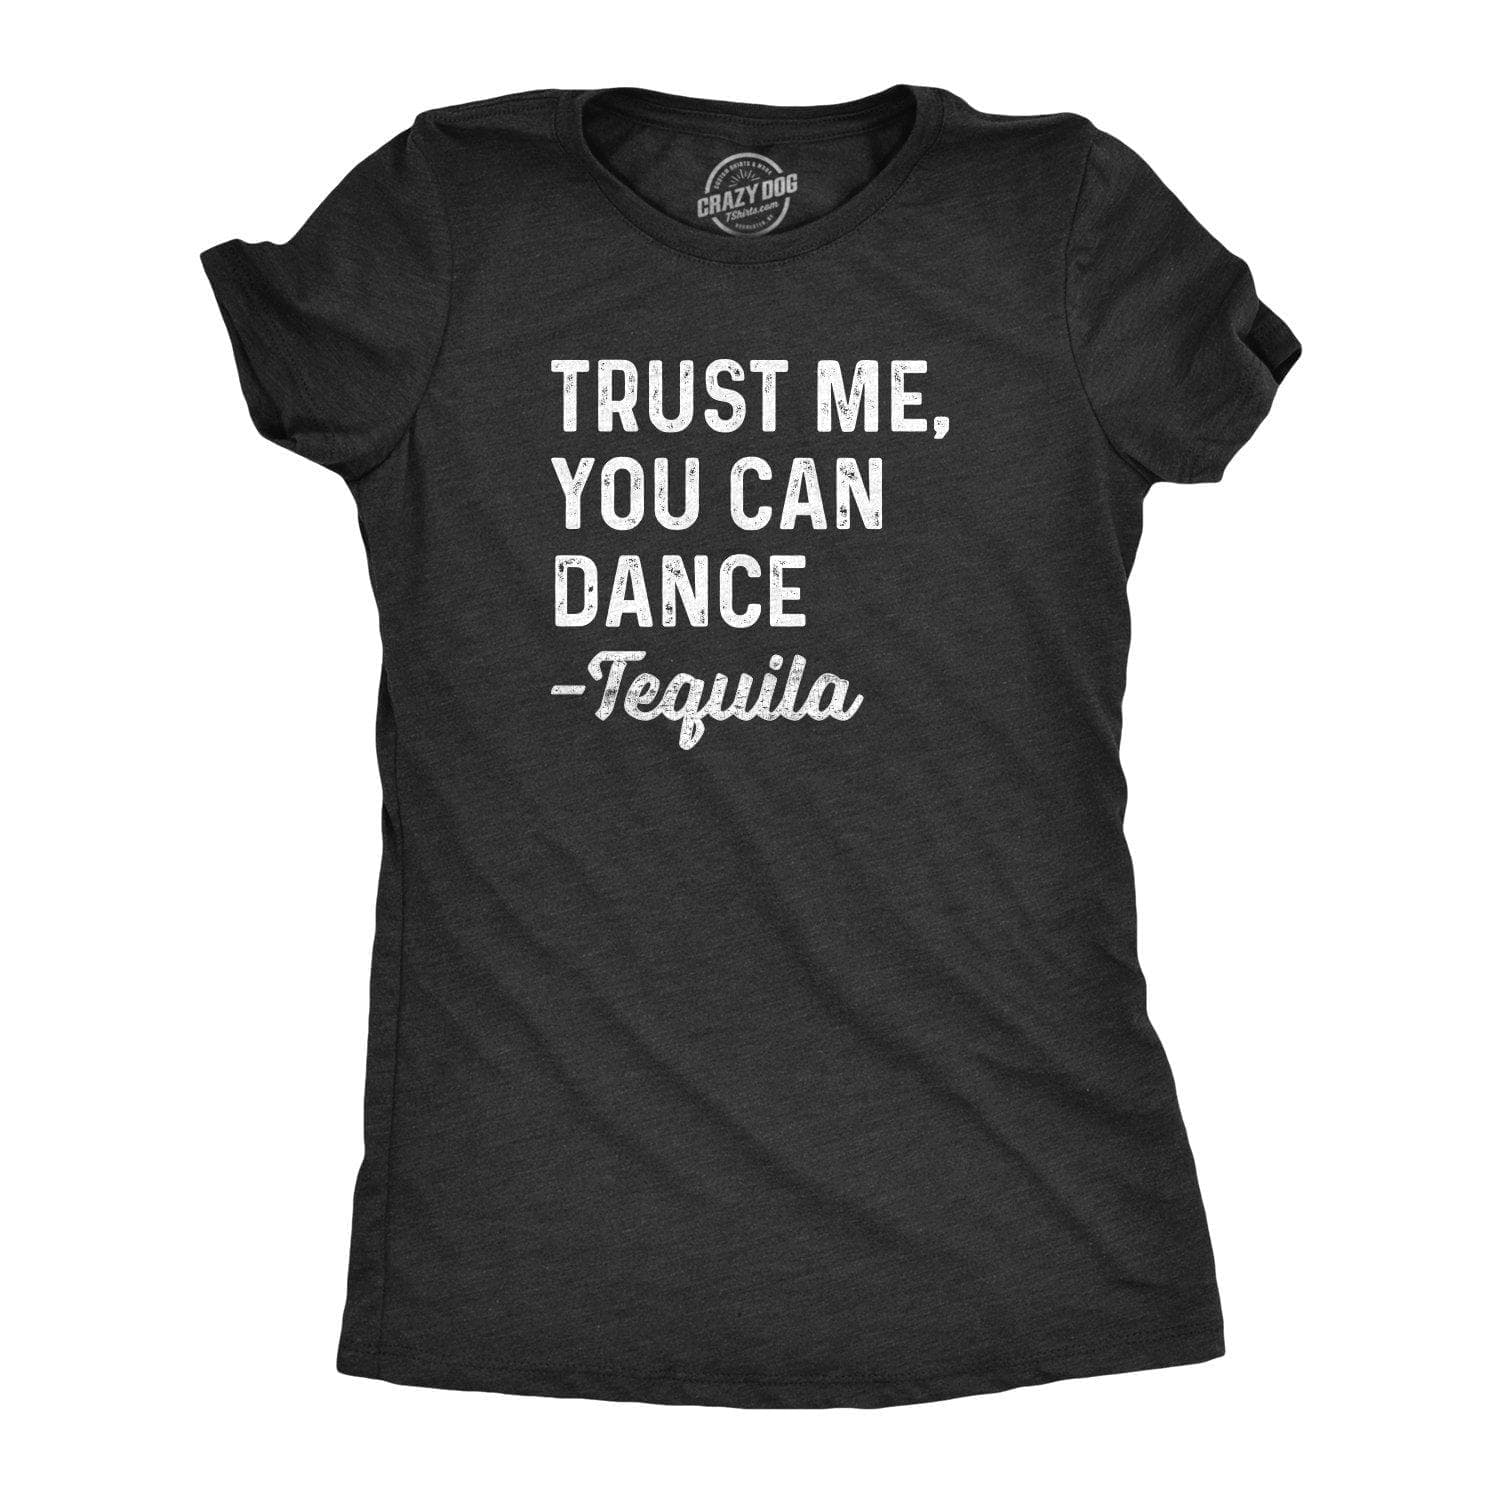 You Can Dance -Tequila Women's Tshirt  -  Crazy Dog T-Shirts